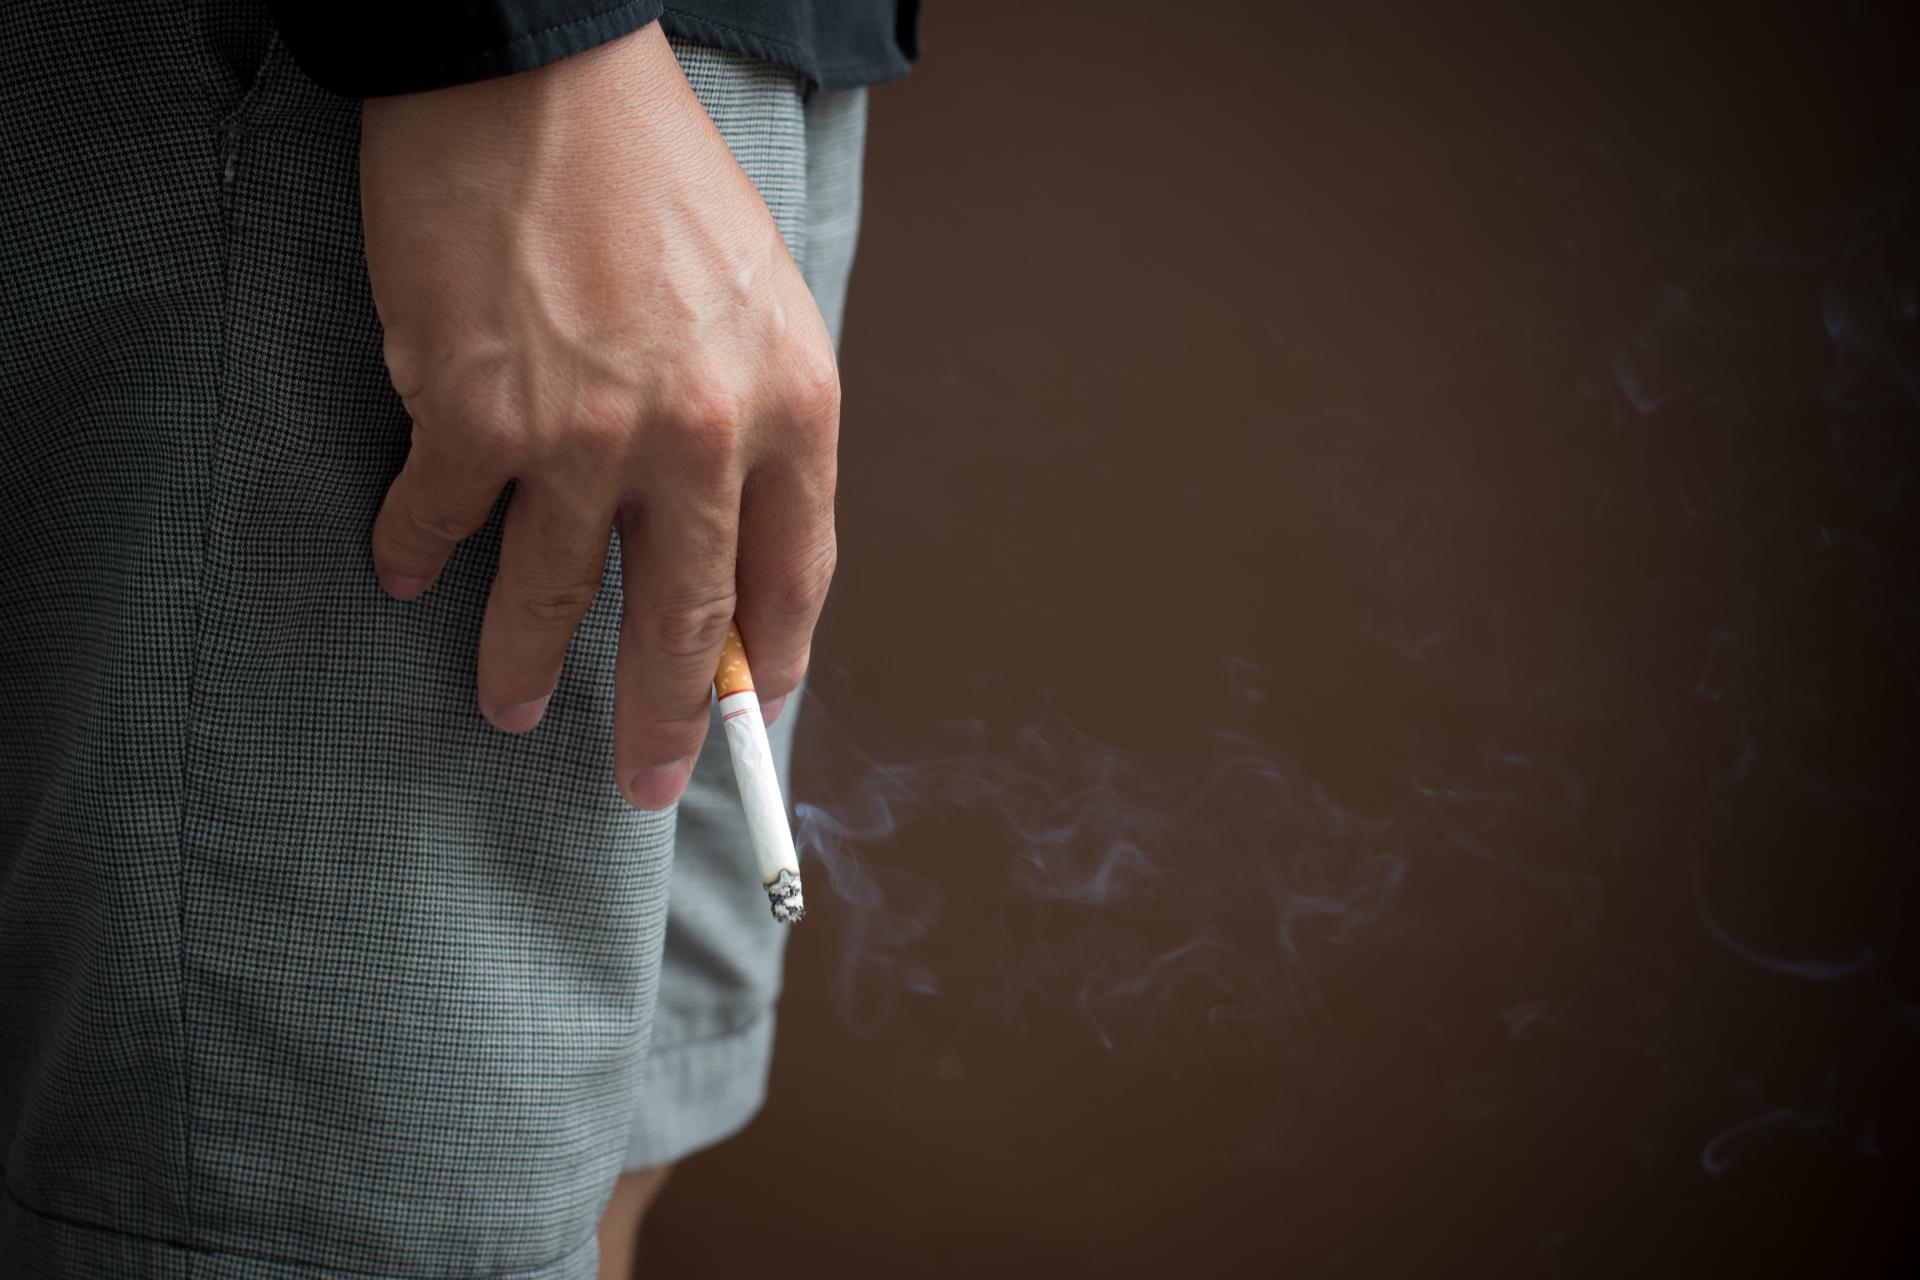 Dospelí fajčiari môžu znížiť riziko, ktorému sa vystavujú

Znižovanie rizika pomáha už roky